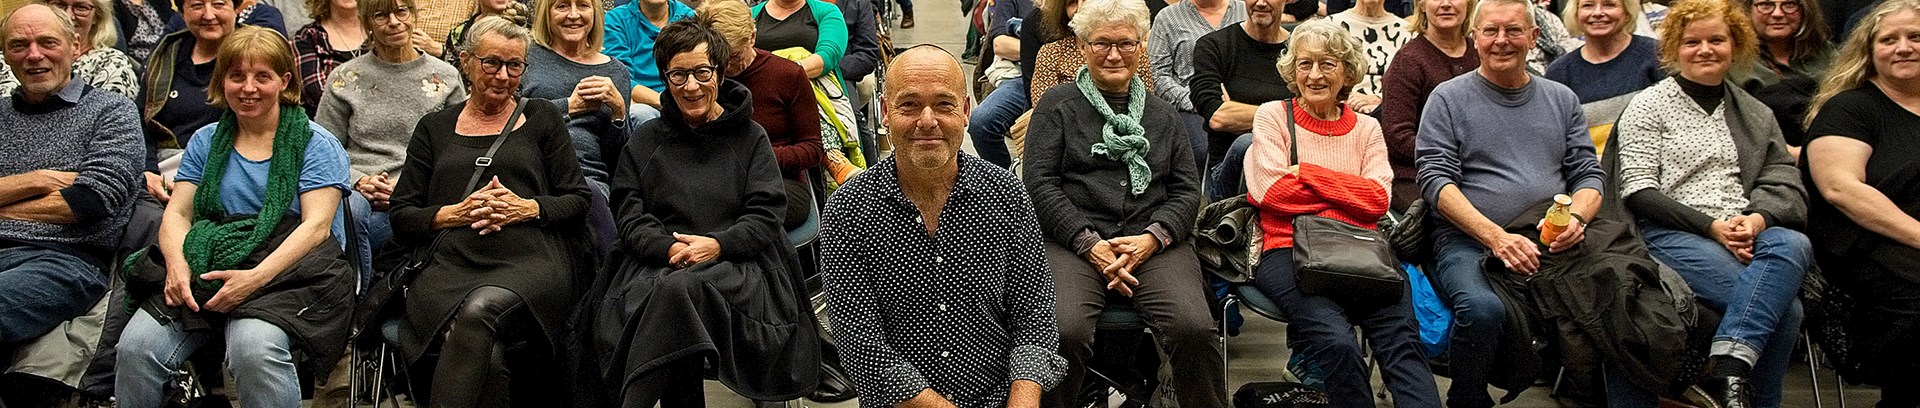 Billede af forfatter Peter Øvig Knudsen foran publikum på Dokk1 i Aarhus